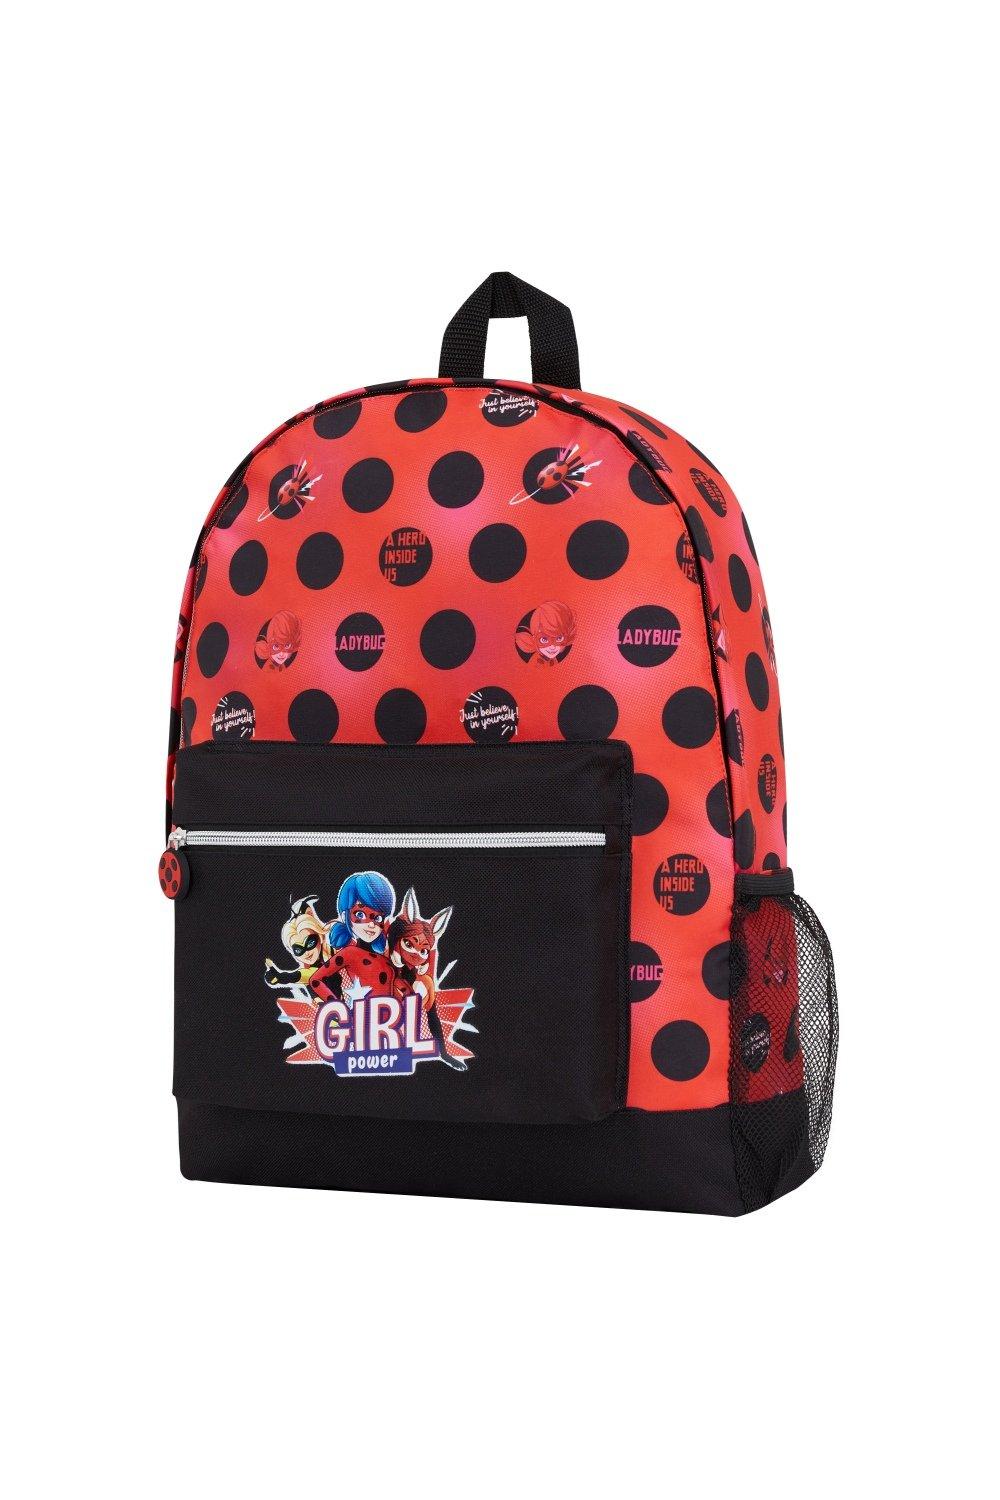 Рюкзак с божьей коровкой Miraculous Ladybug, мультиколор детский дошкольный рюкзак божья коровка